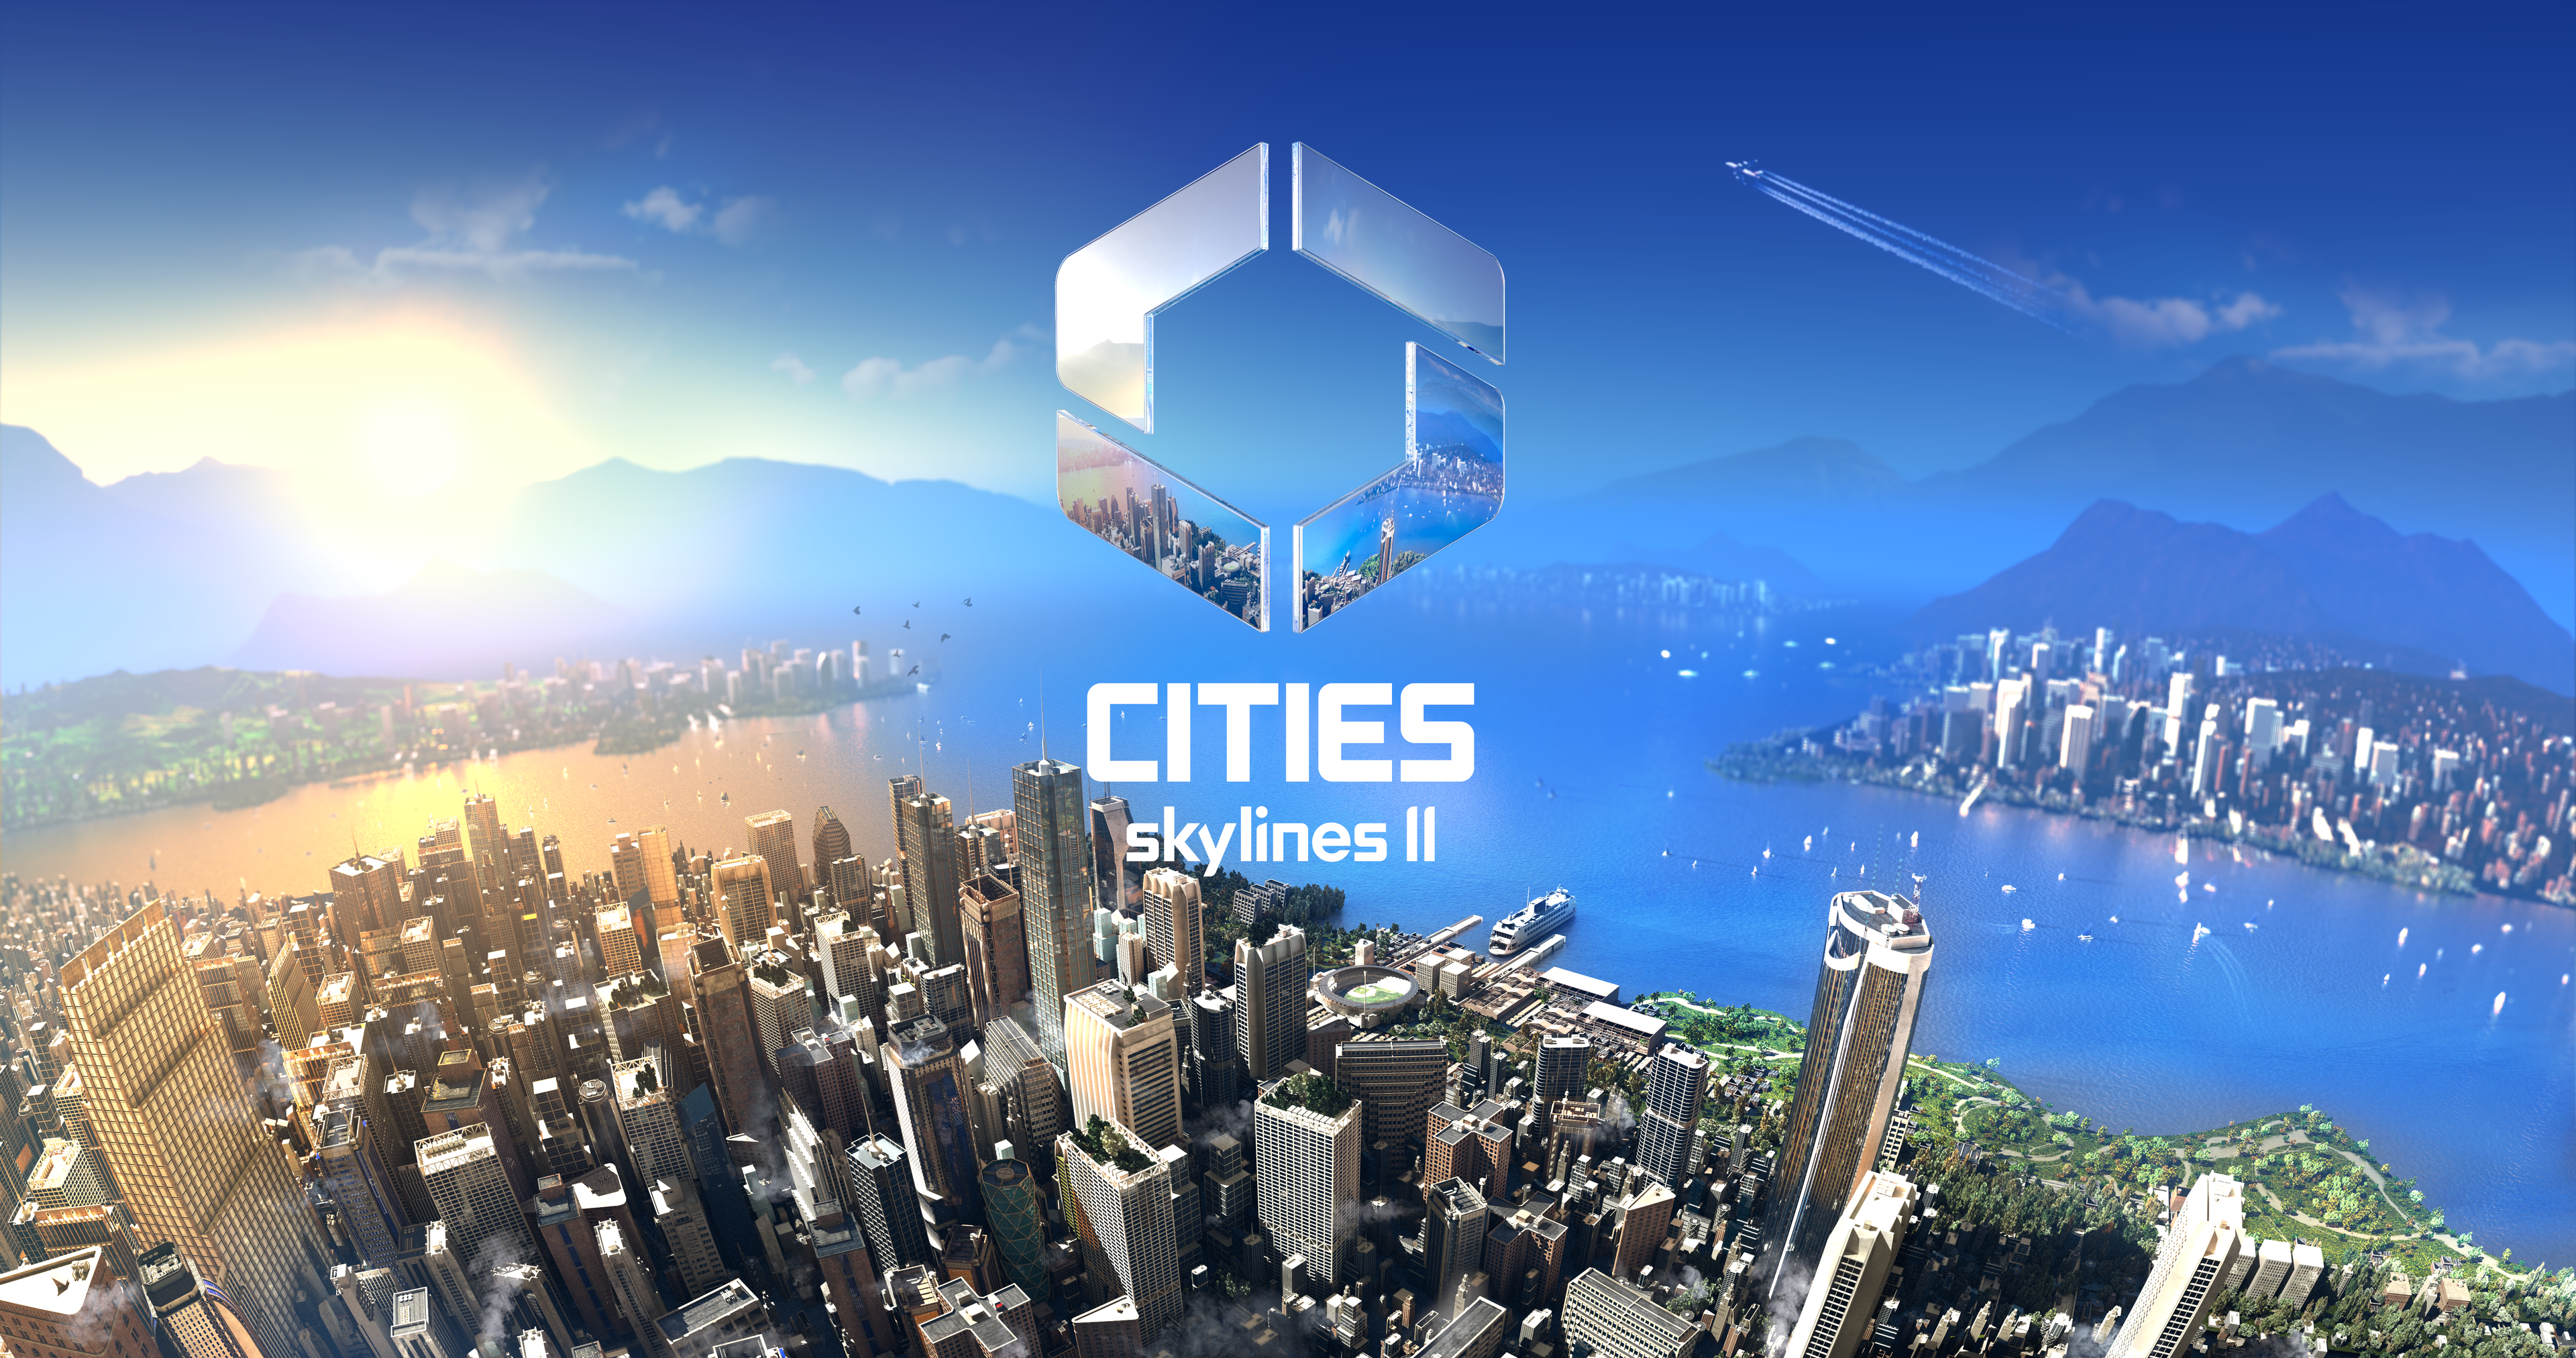 Collosal Order "wiele się nauczyło" dzięki opiniom społeczności Cities Skylines